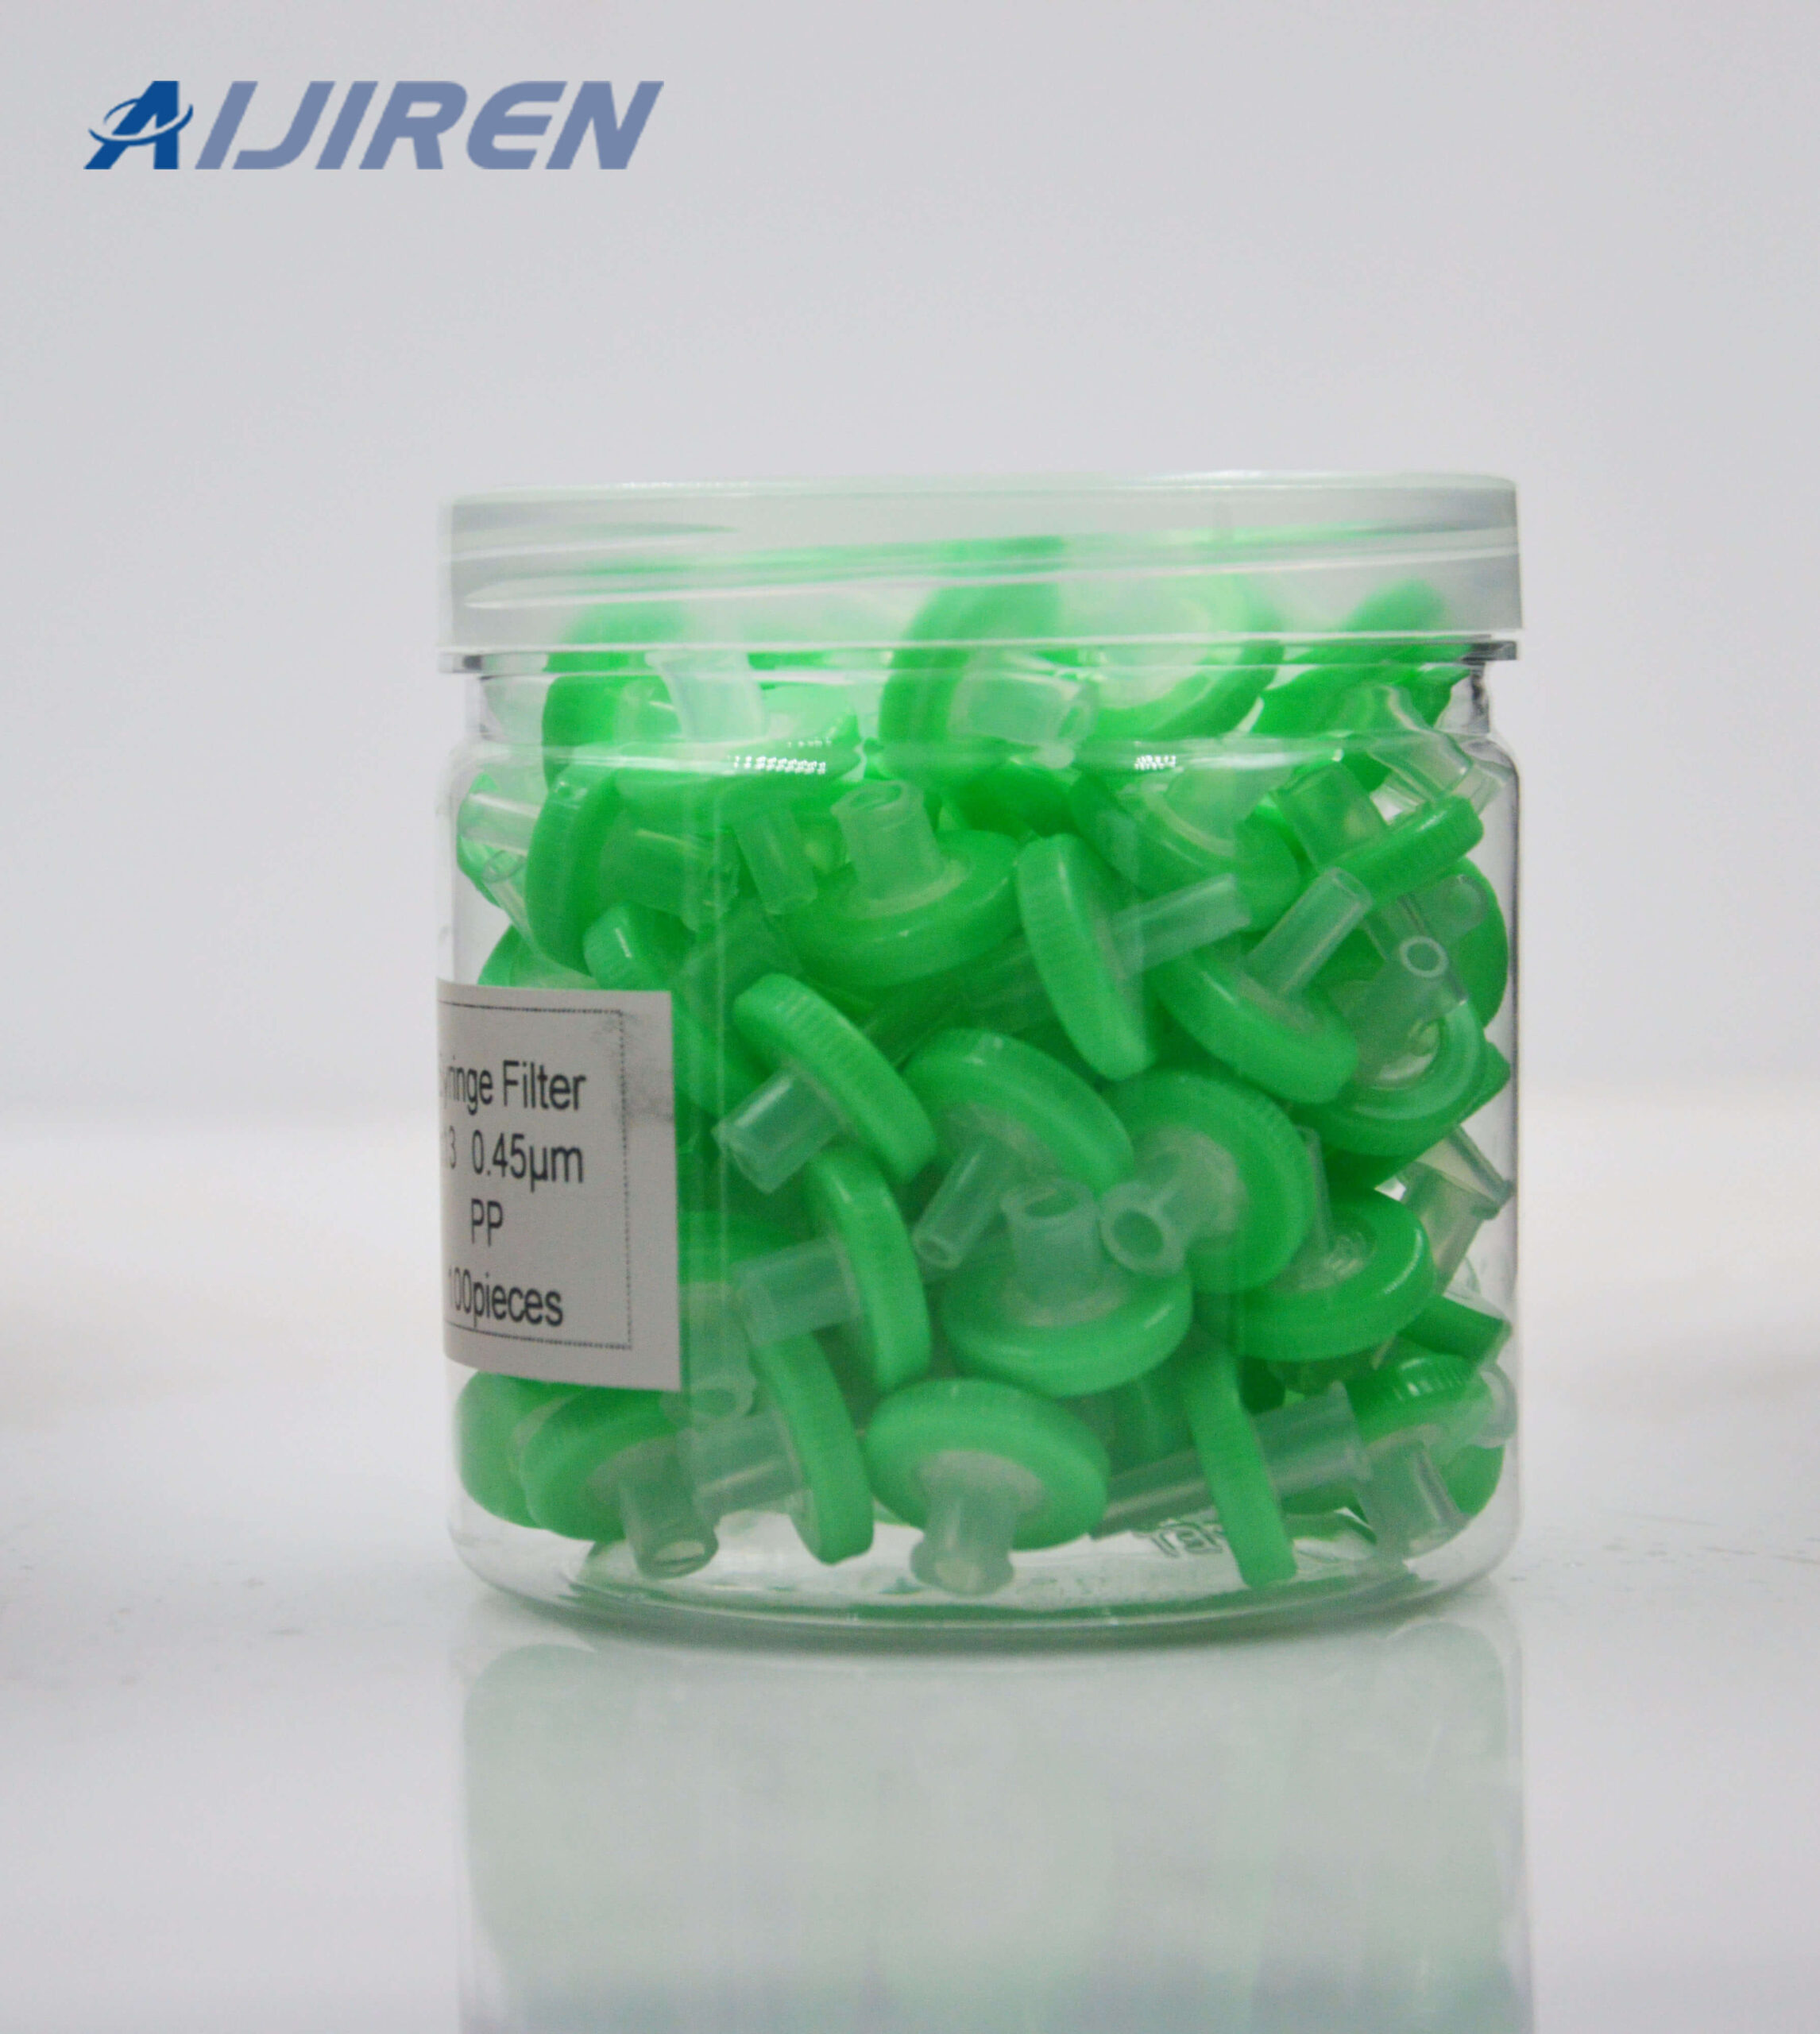 Green PP Syringe Filter for Sale